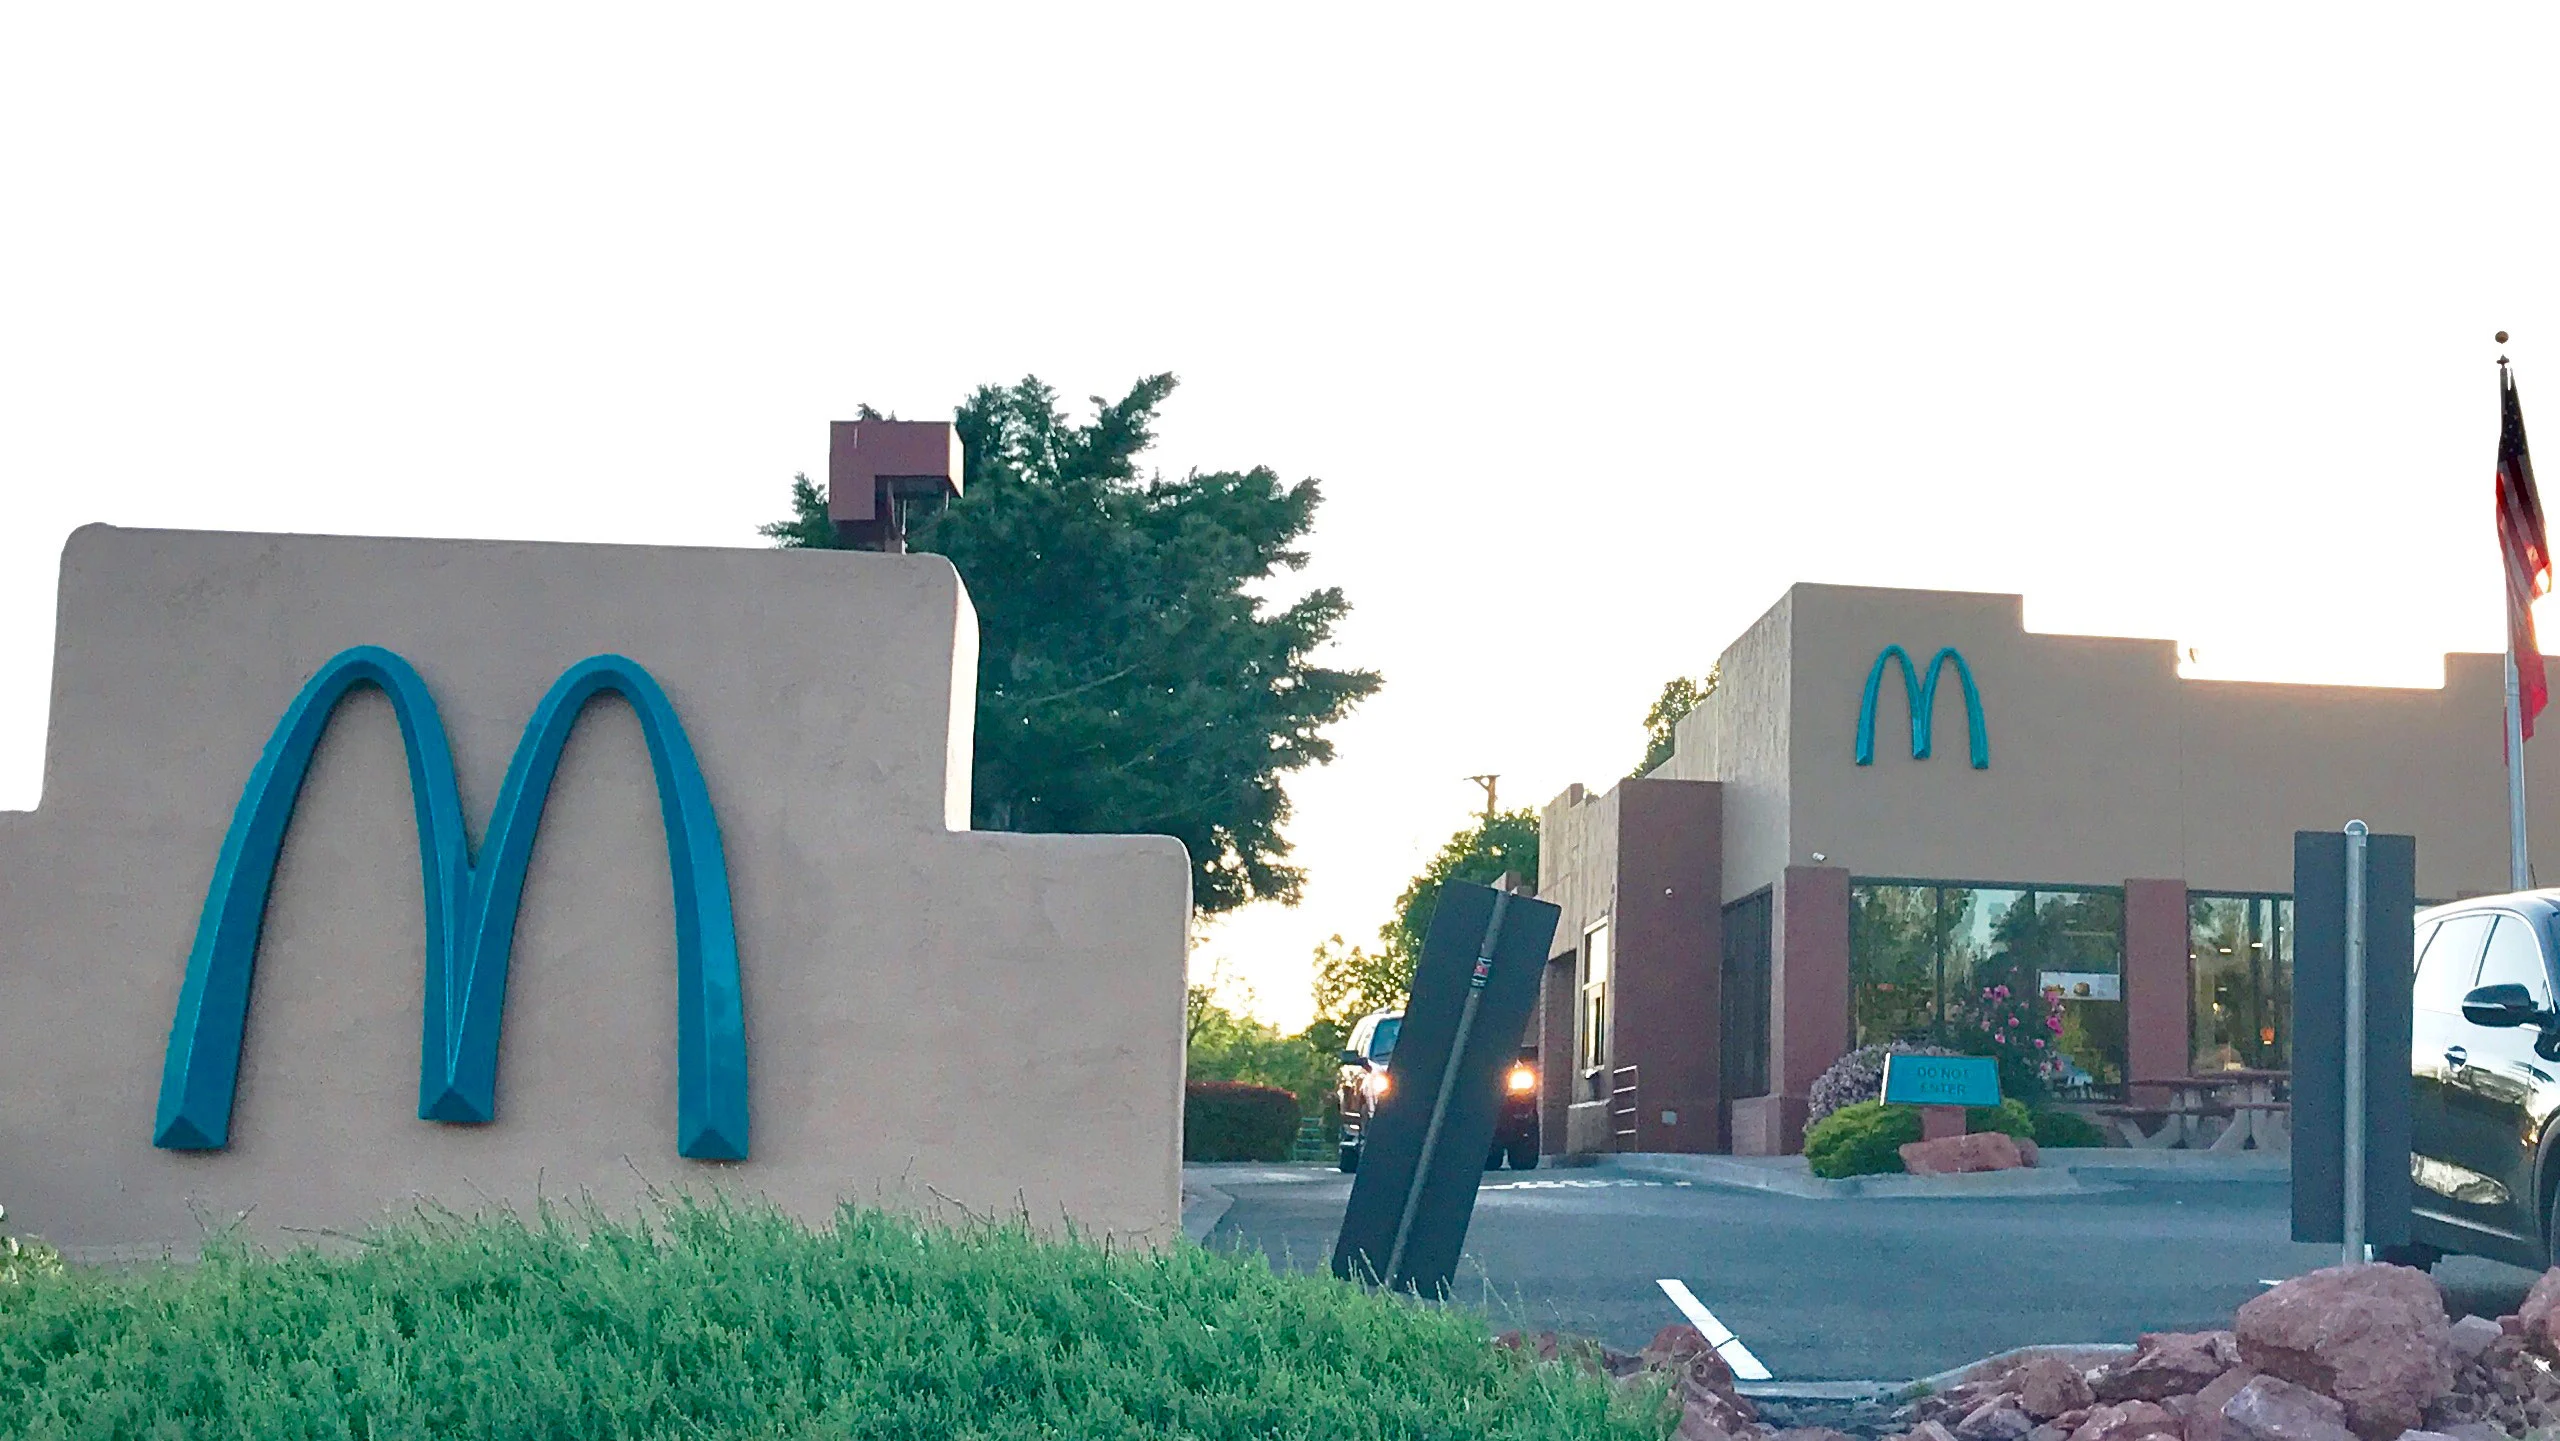 La extraña razón por la que este logo de McDonald’s es azul turquesa